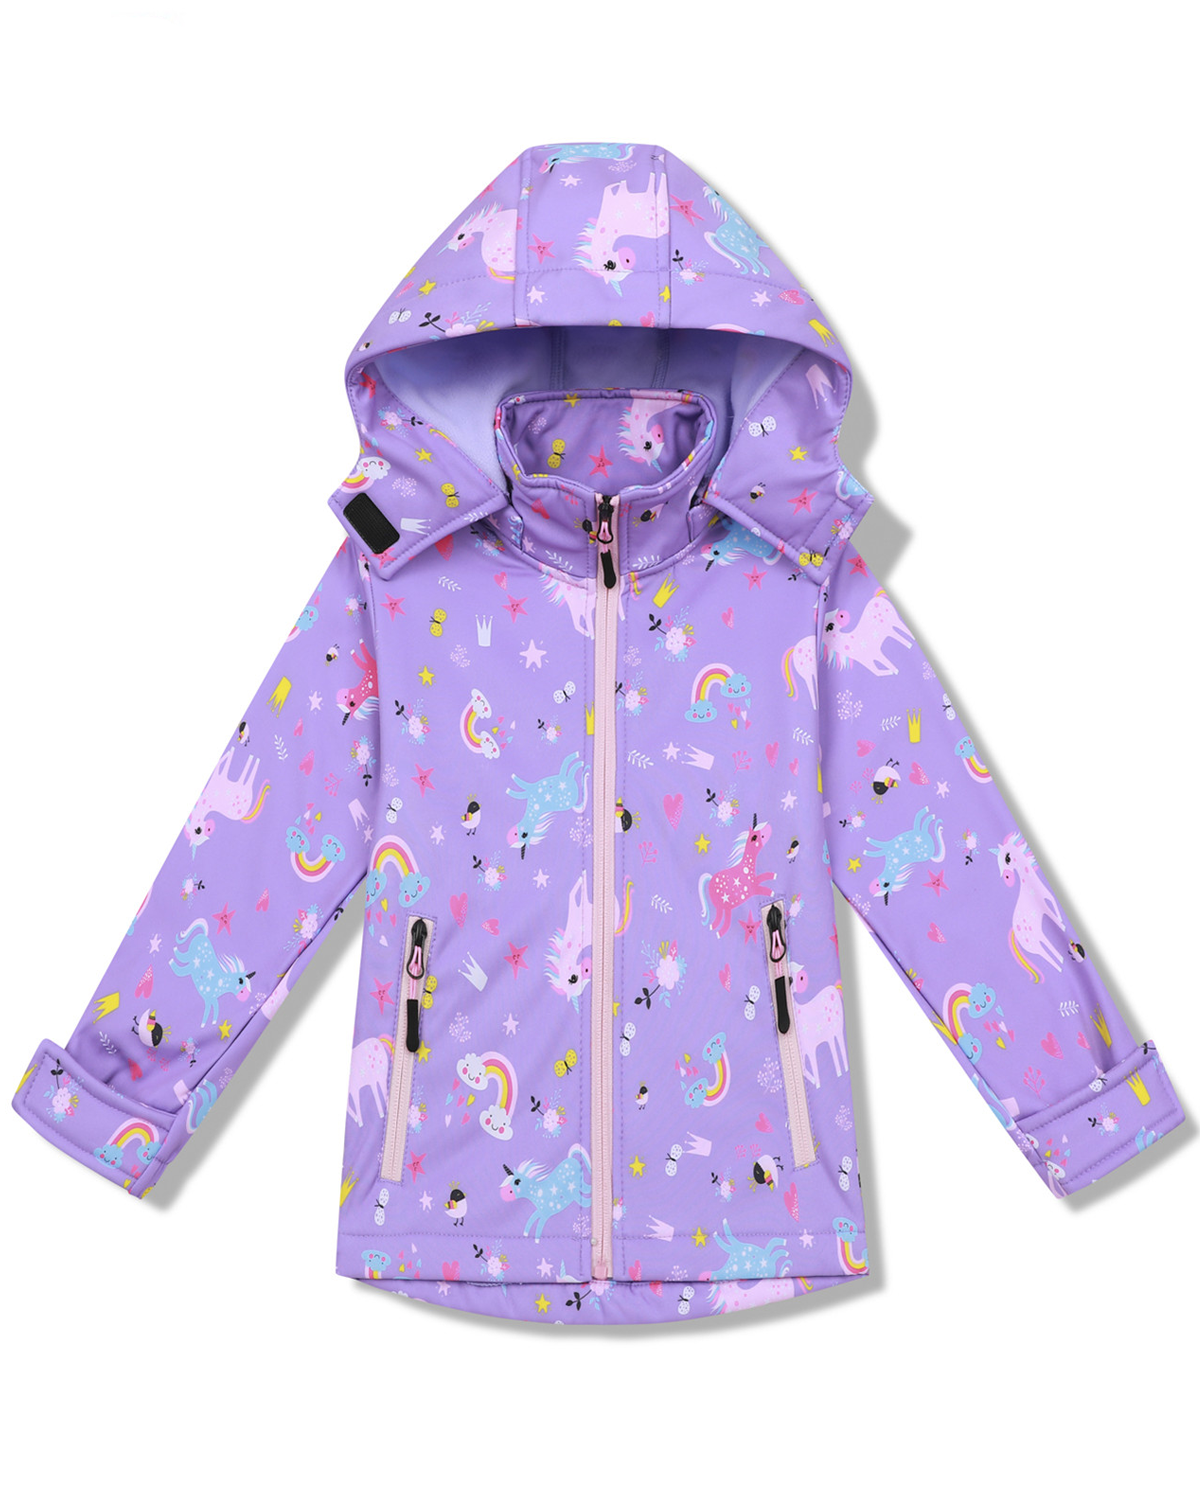 Dívčí softshellová bunda, zateplená - KUGO HB8630, fialková Barva: Fialková, Velikost: 98